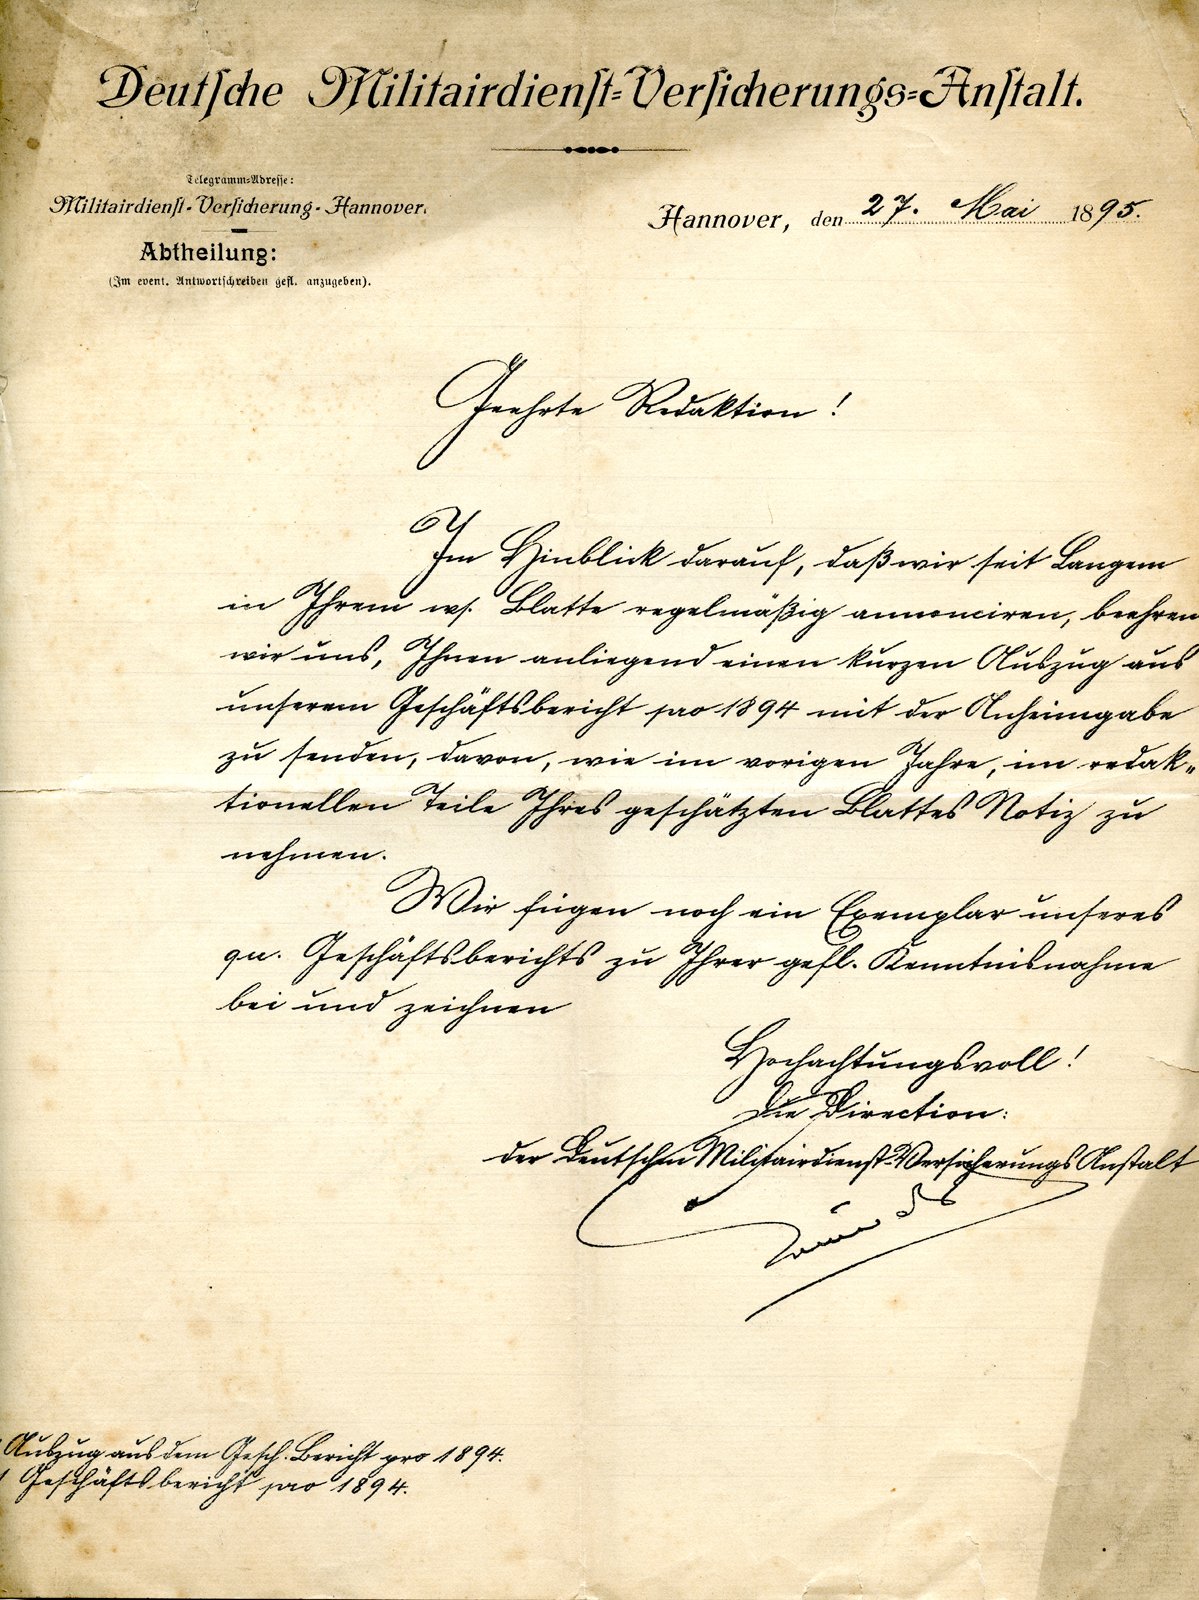 Militairversicherung an dobert, 27.05.1895 (Heimatverein "Alter Krug" Zossen e.V. CC BY-NC-SA)